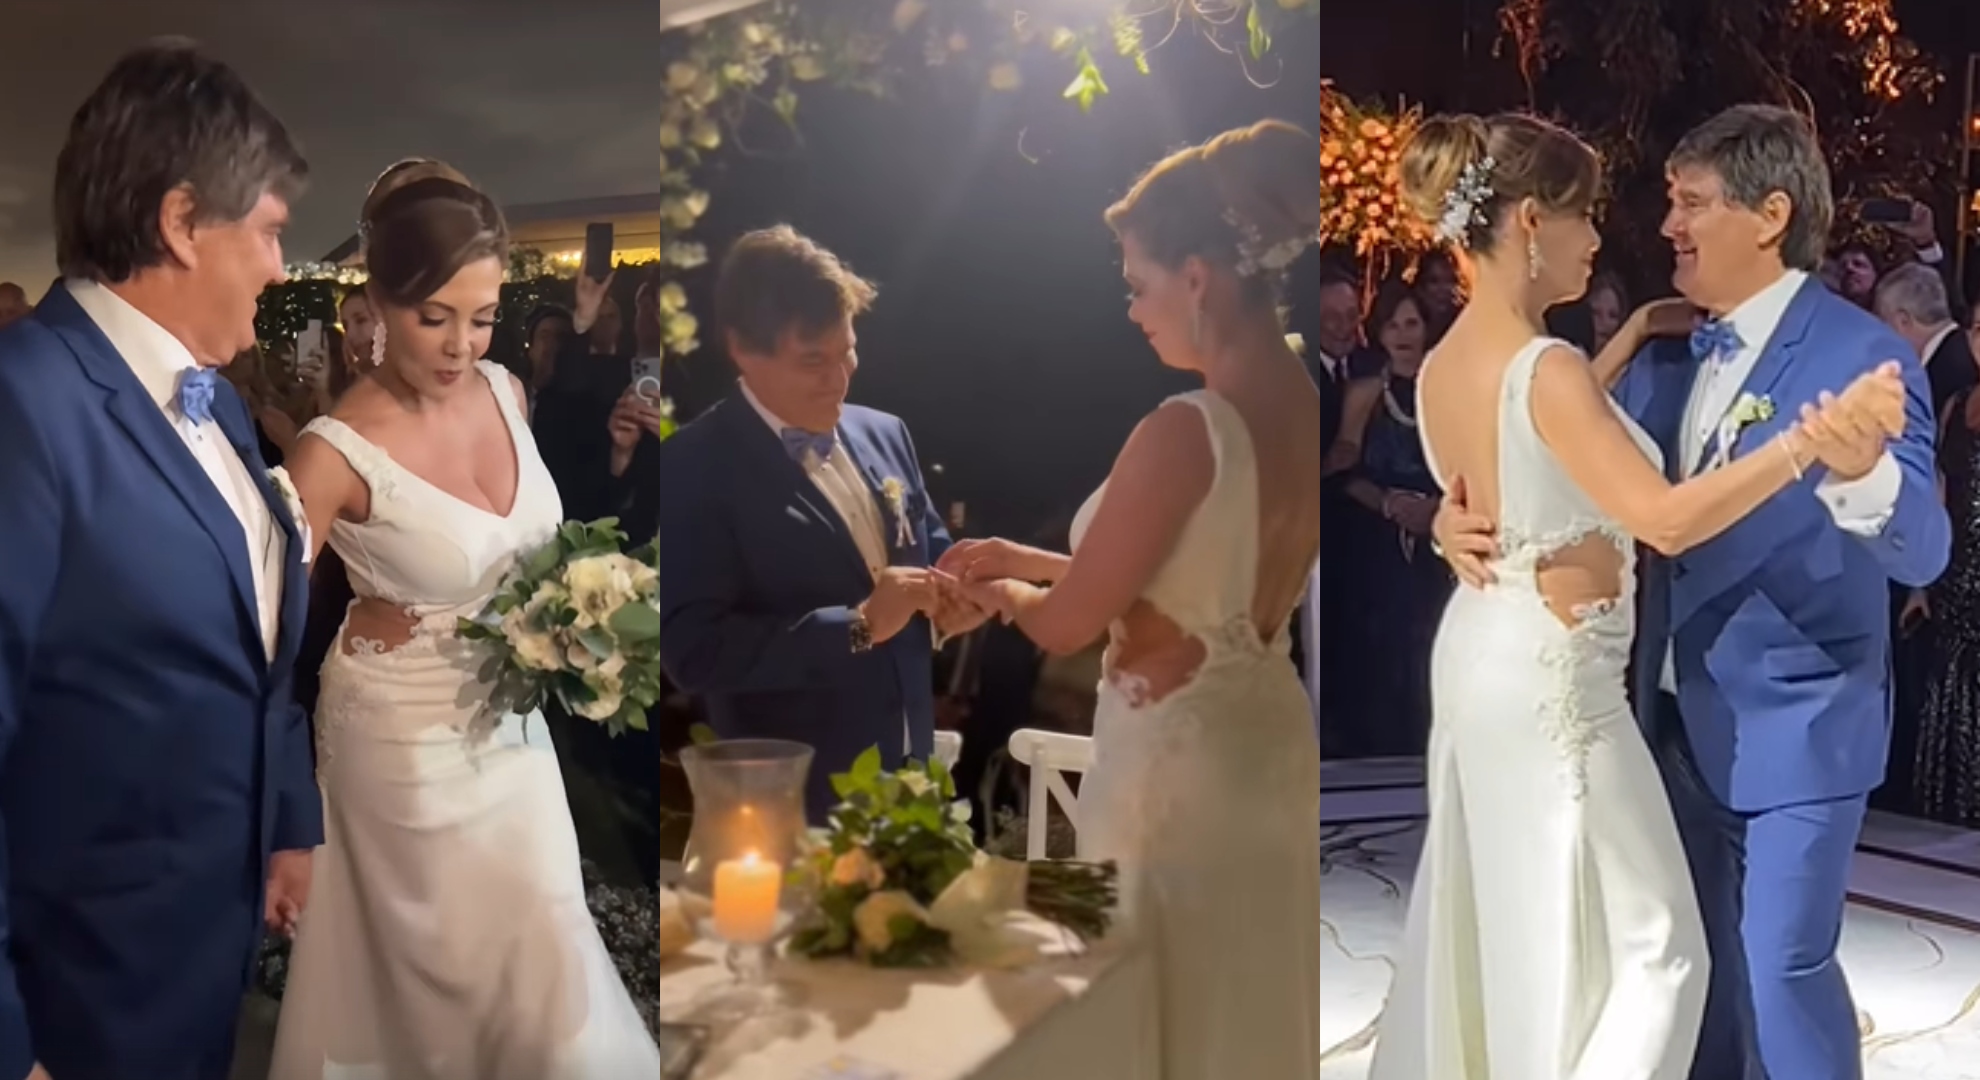 Maritere Braschi se casó con el empresario Guillermo Acha: la ceremonia, el ansiado “sí” y la lujosa fiesta